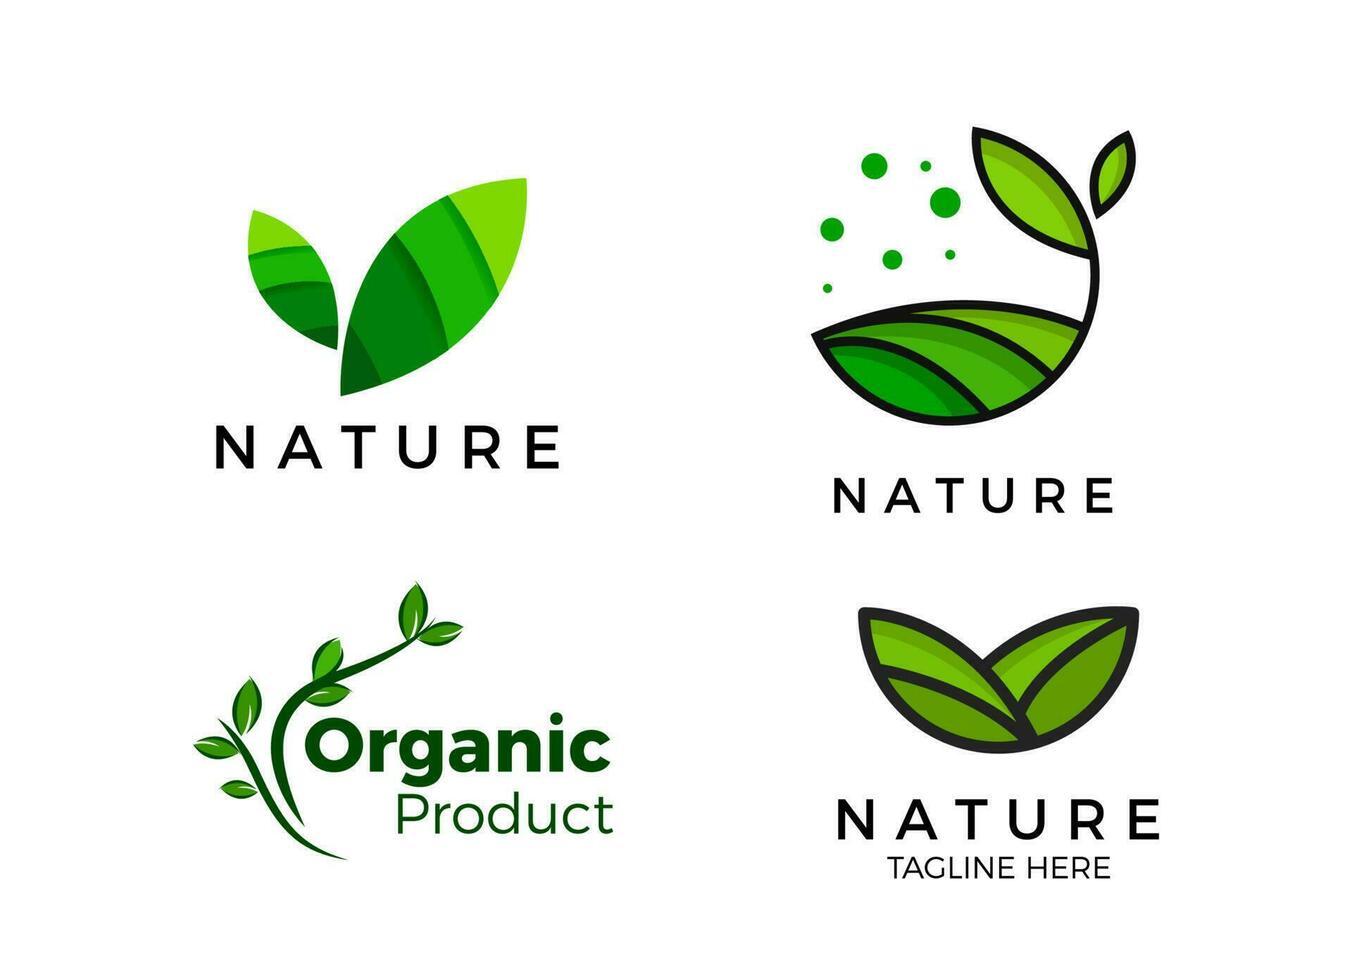 selo de produto orgânico, inspiração de designs de logotipo da natureza. vetor